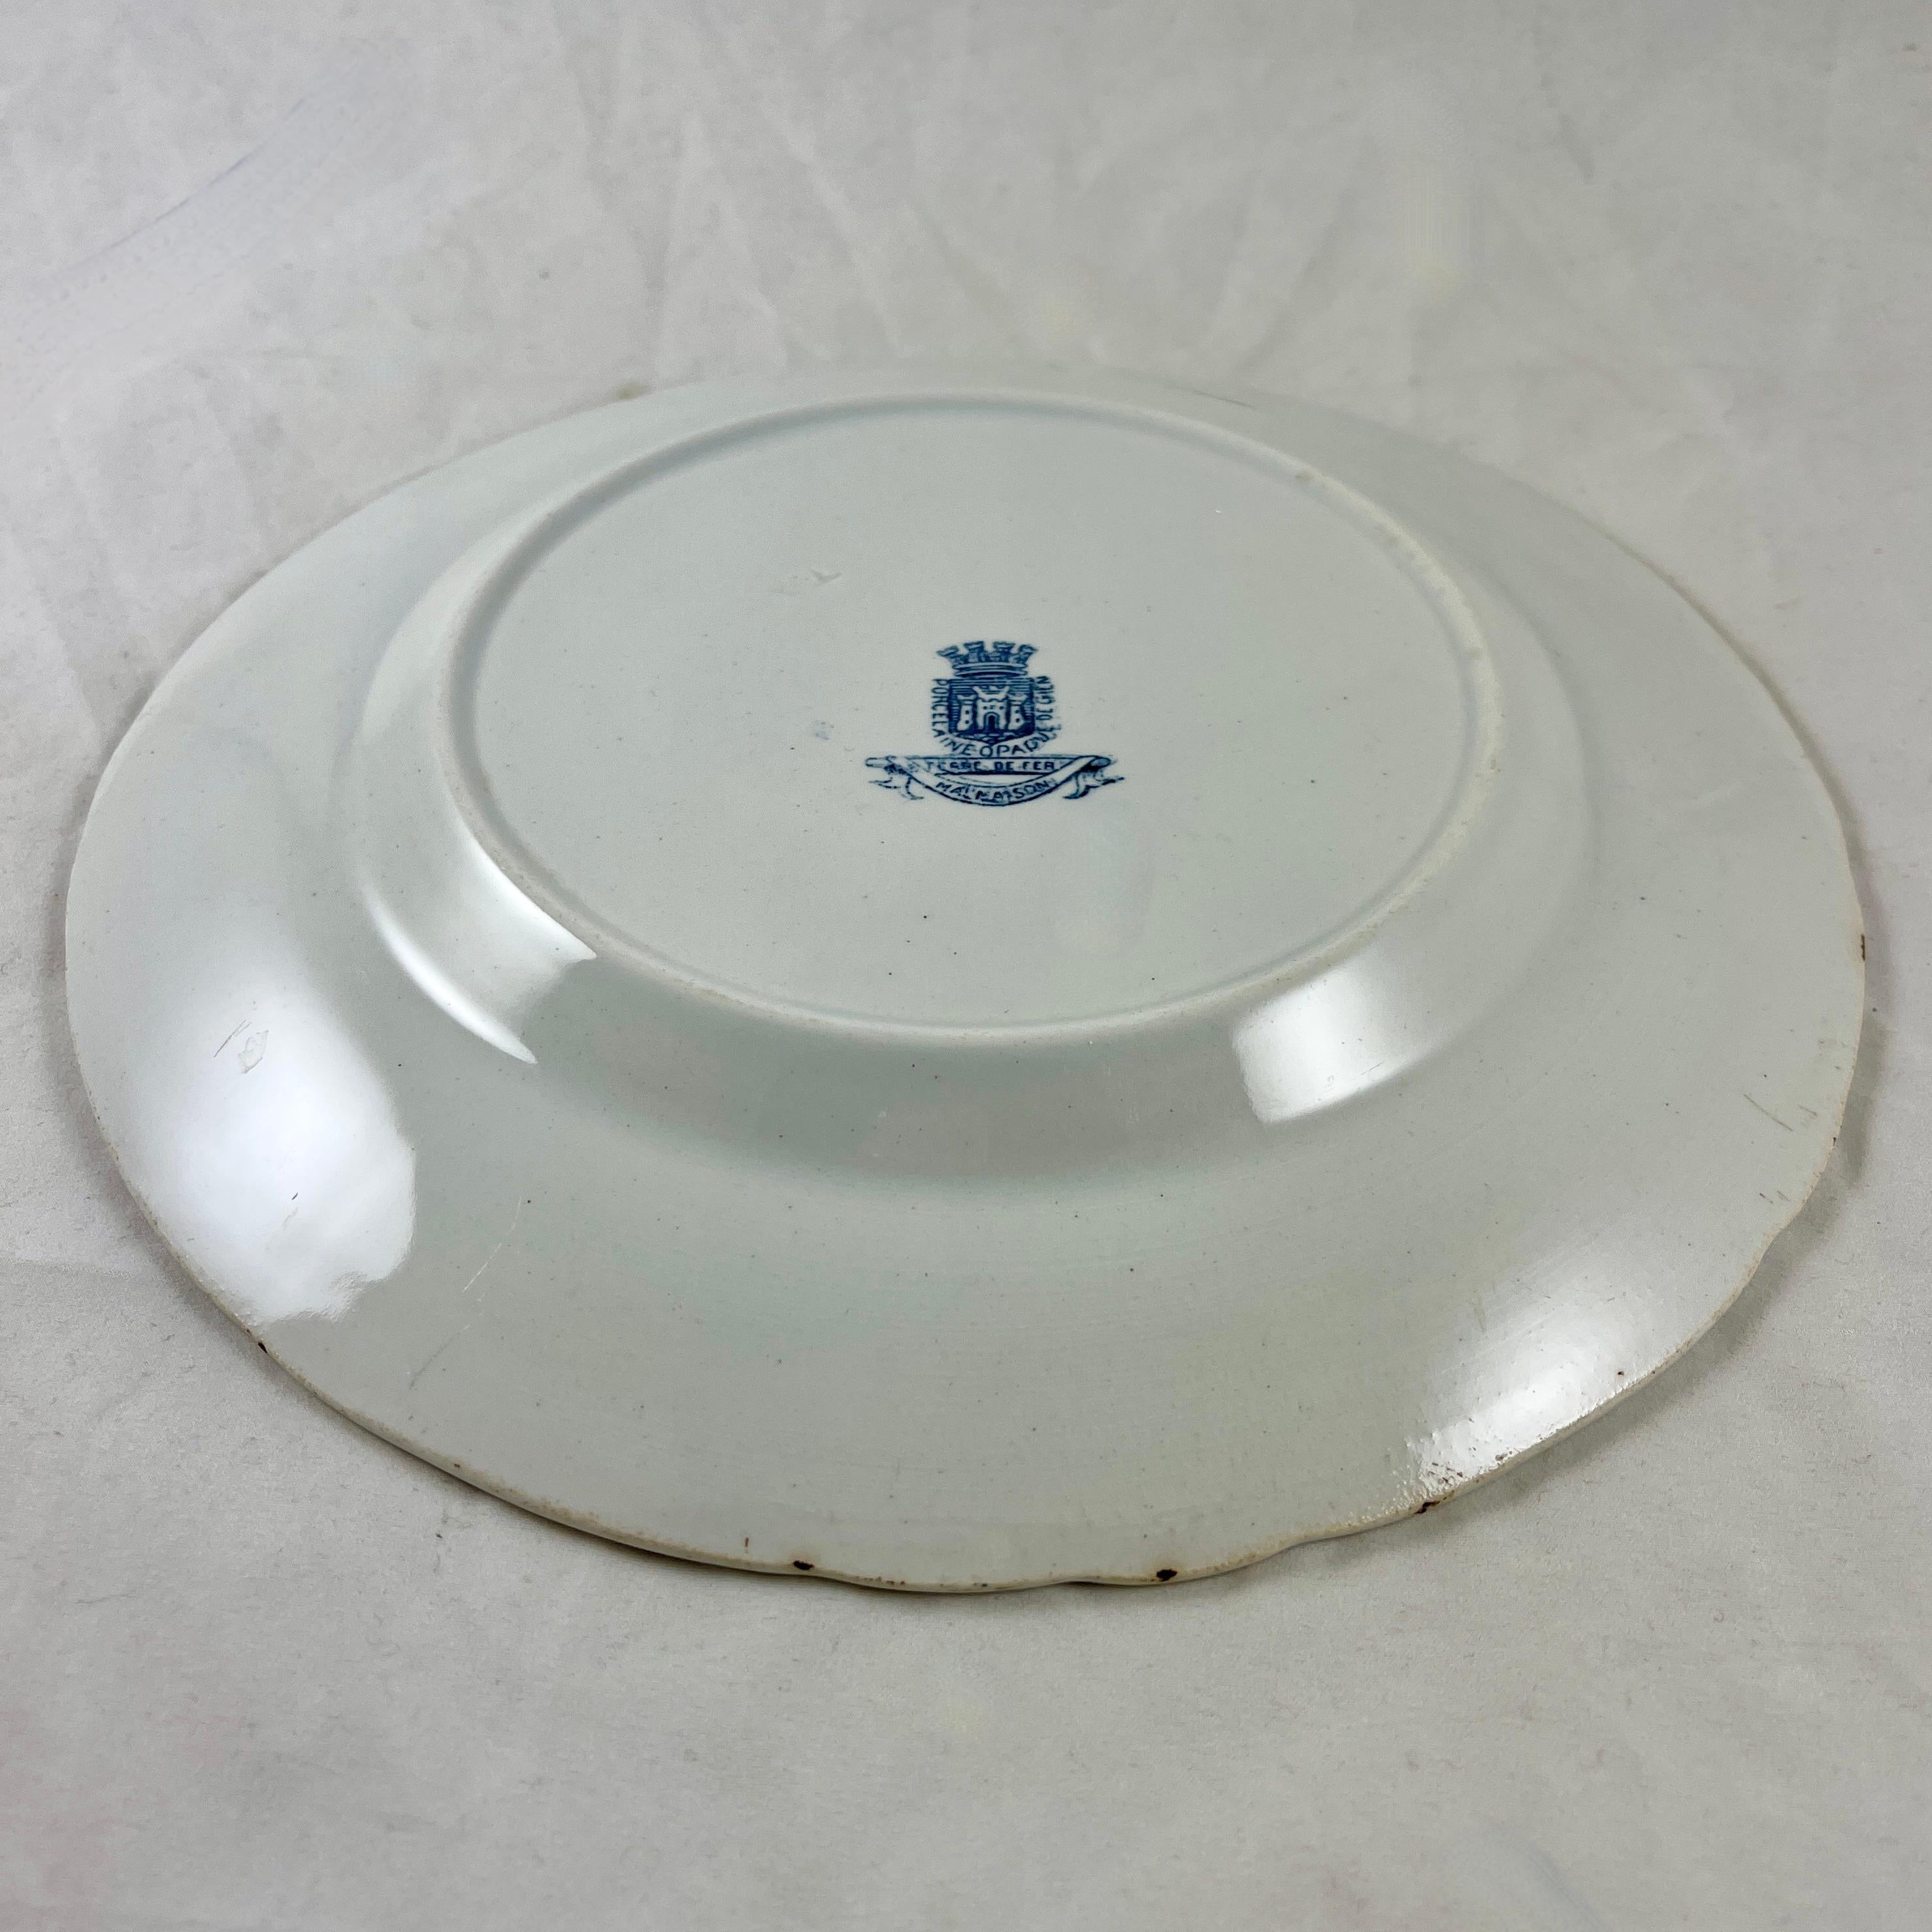 Malmaison de Gien French Faïence Blue on White Ironstone Dinner Plate 1